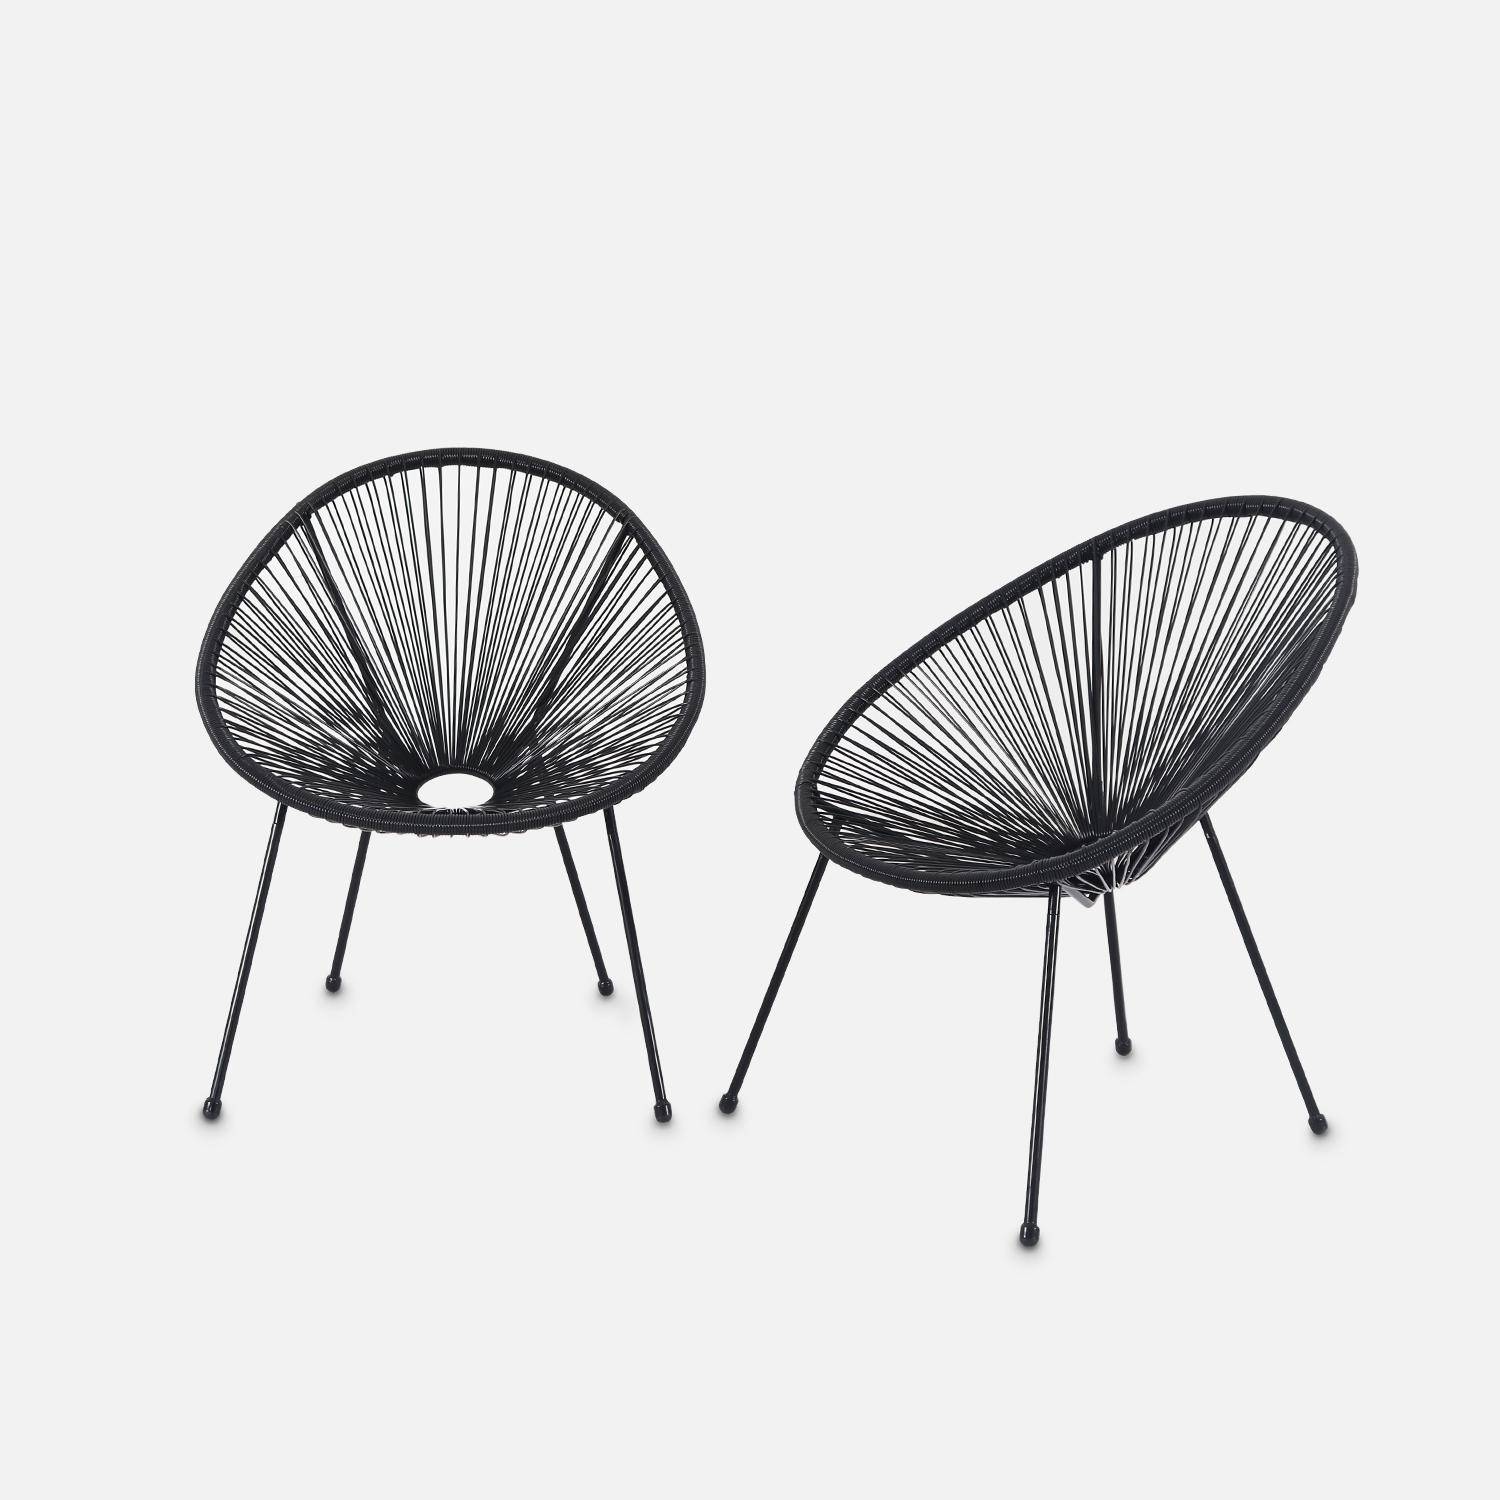 Lot de 2 fauteuils design Oeuf - Acapulco Noir- Fauteuils 4 pieds design rétro, cordage plastique, intérieur / extérieur Photo2